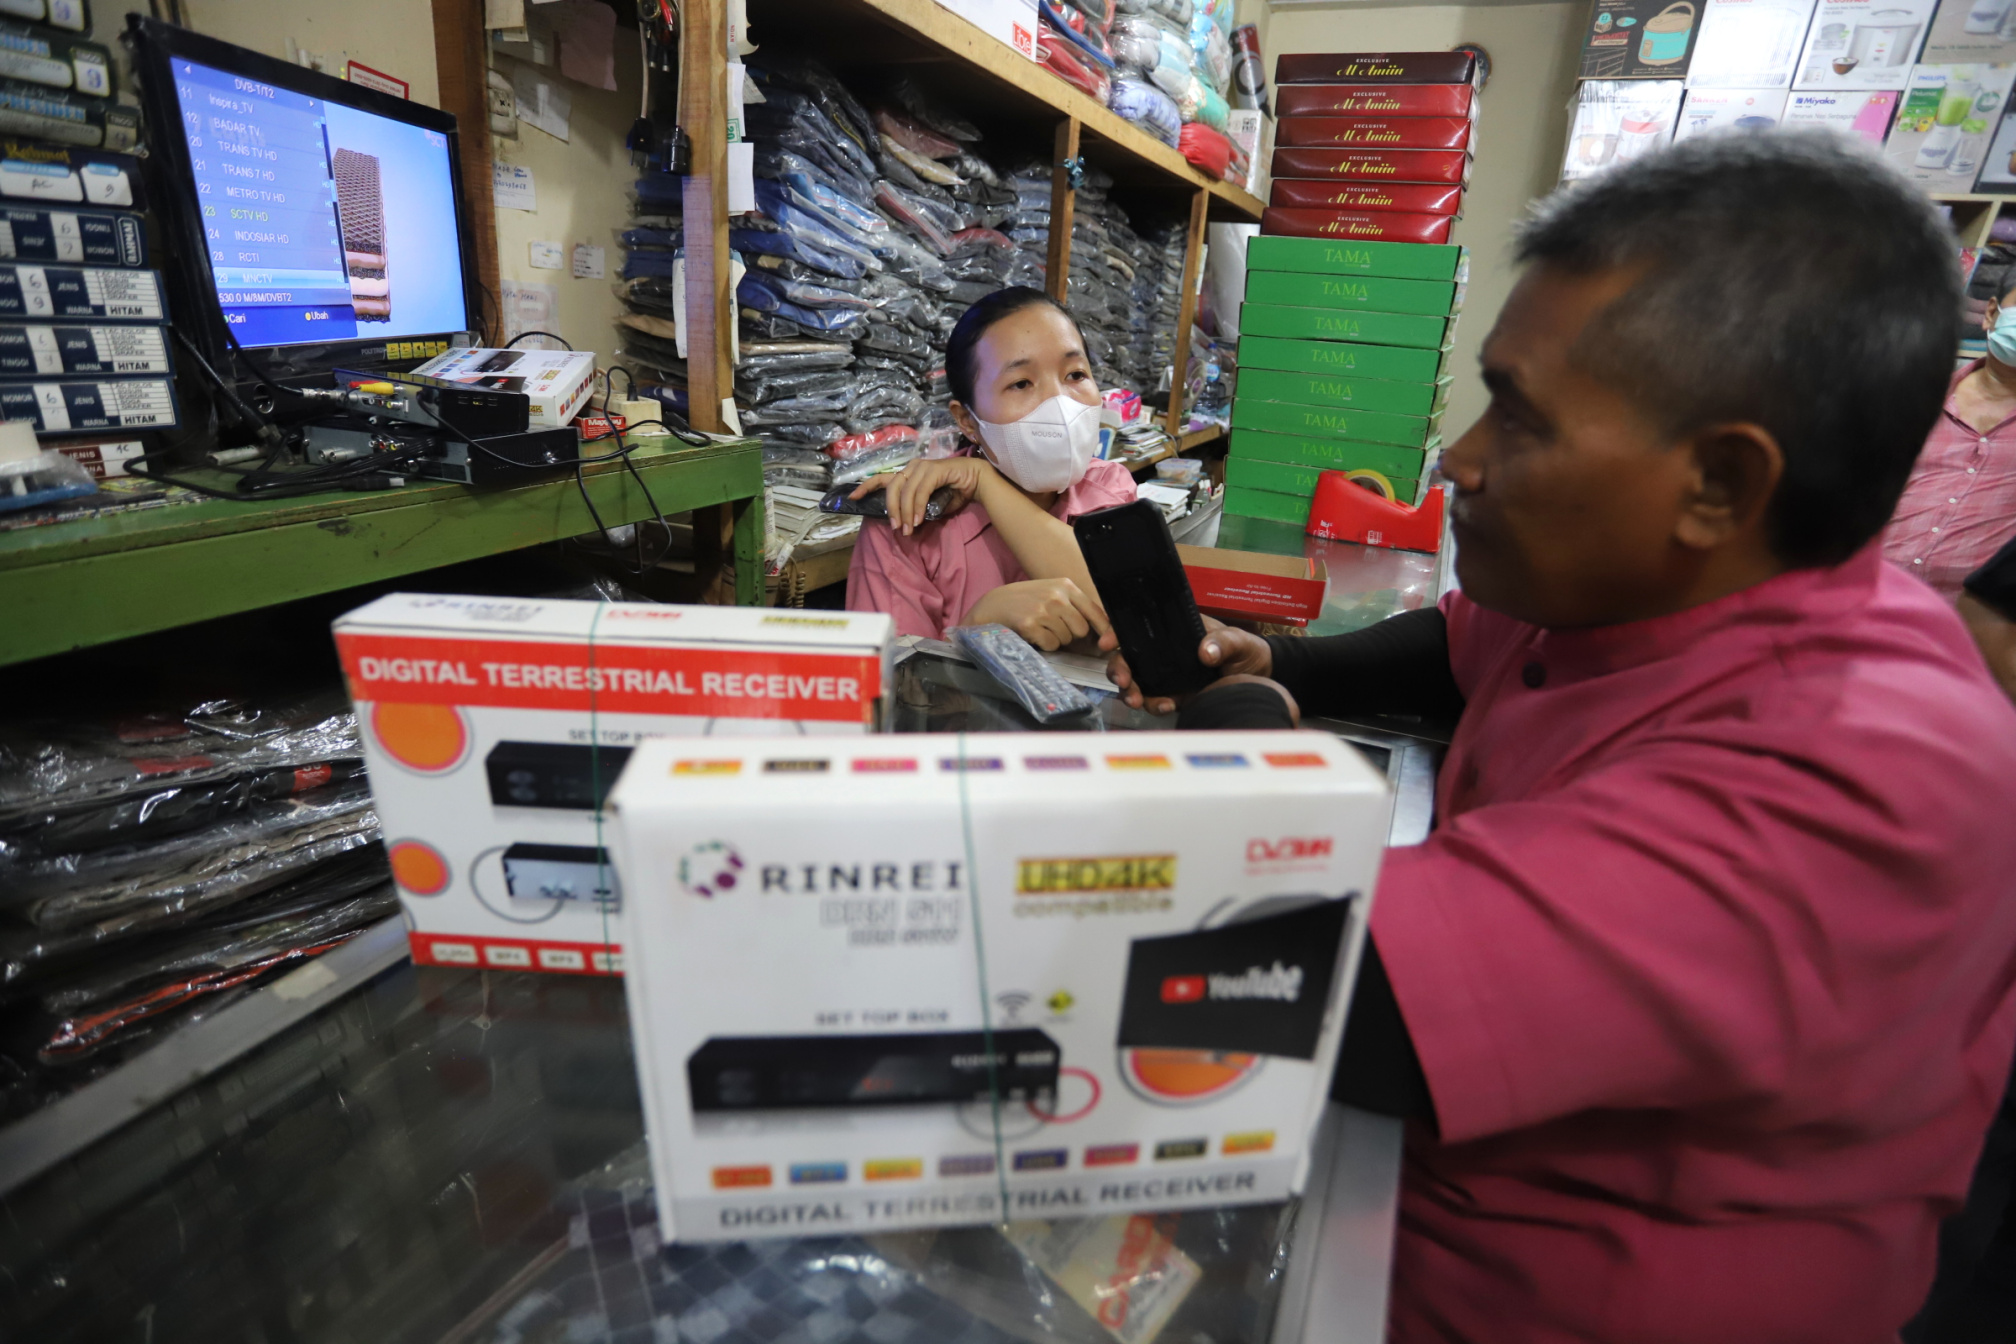 Warga antre membeli alat Set Top Box (STB) TV digital di pusat elektronik Pasar Kebayoran Lama (Ashar/SinPo.id)